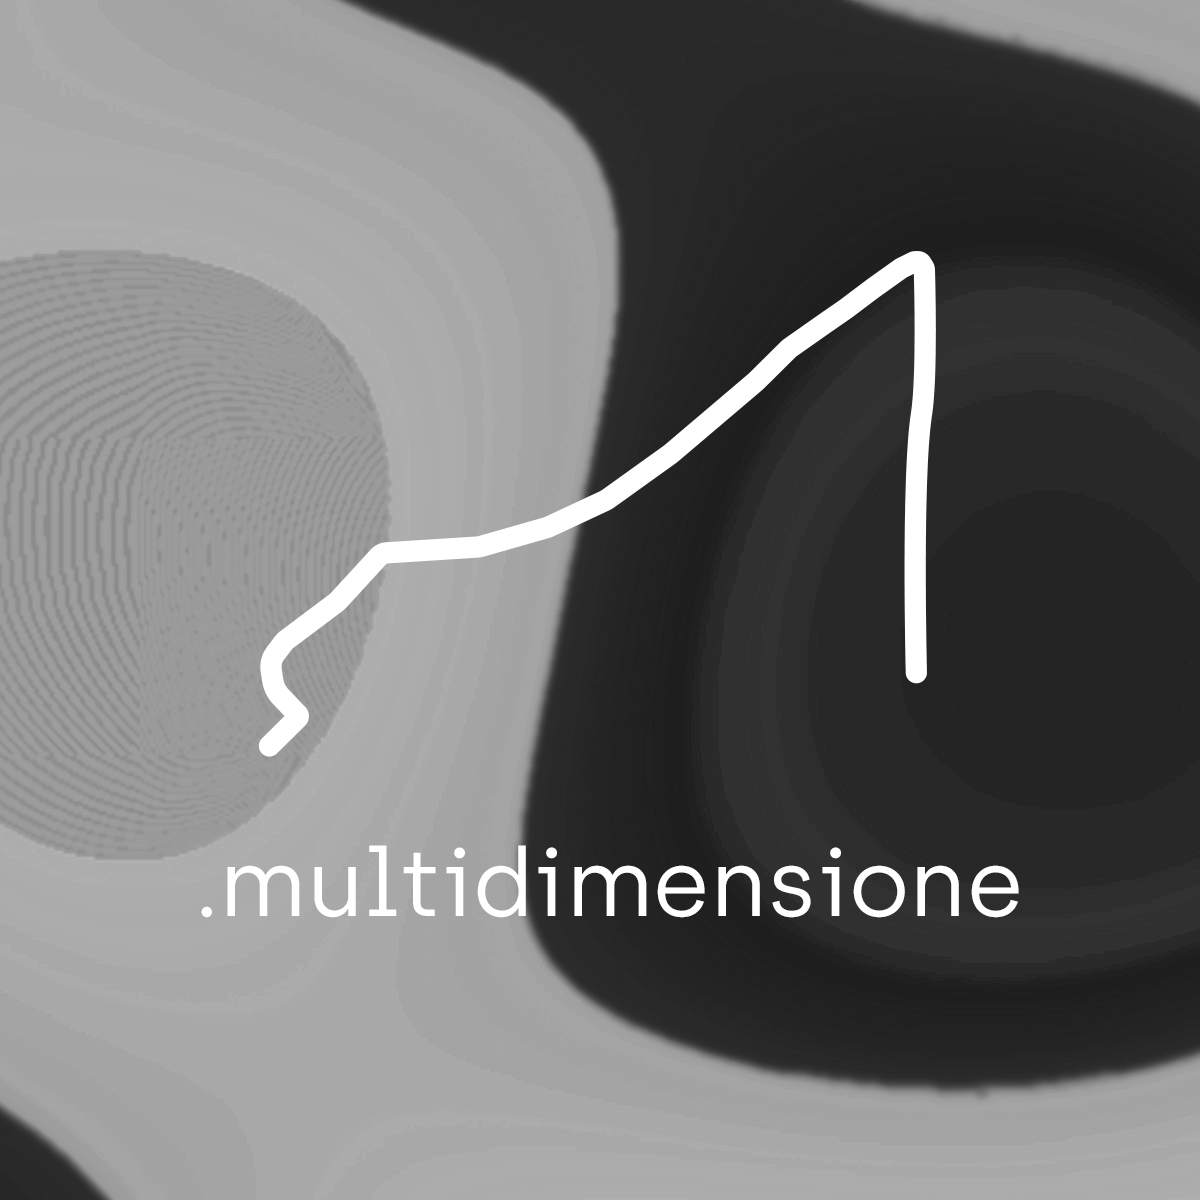 Multidimensione festival - フライヤー表